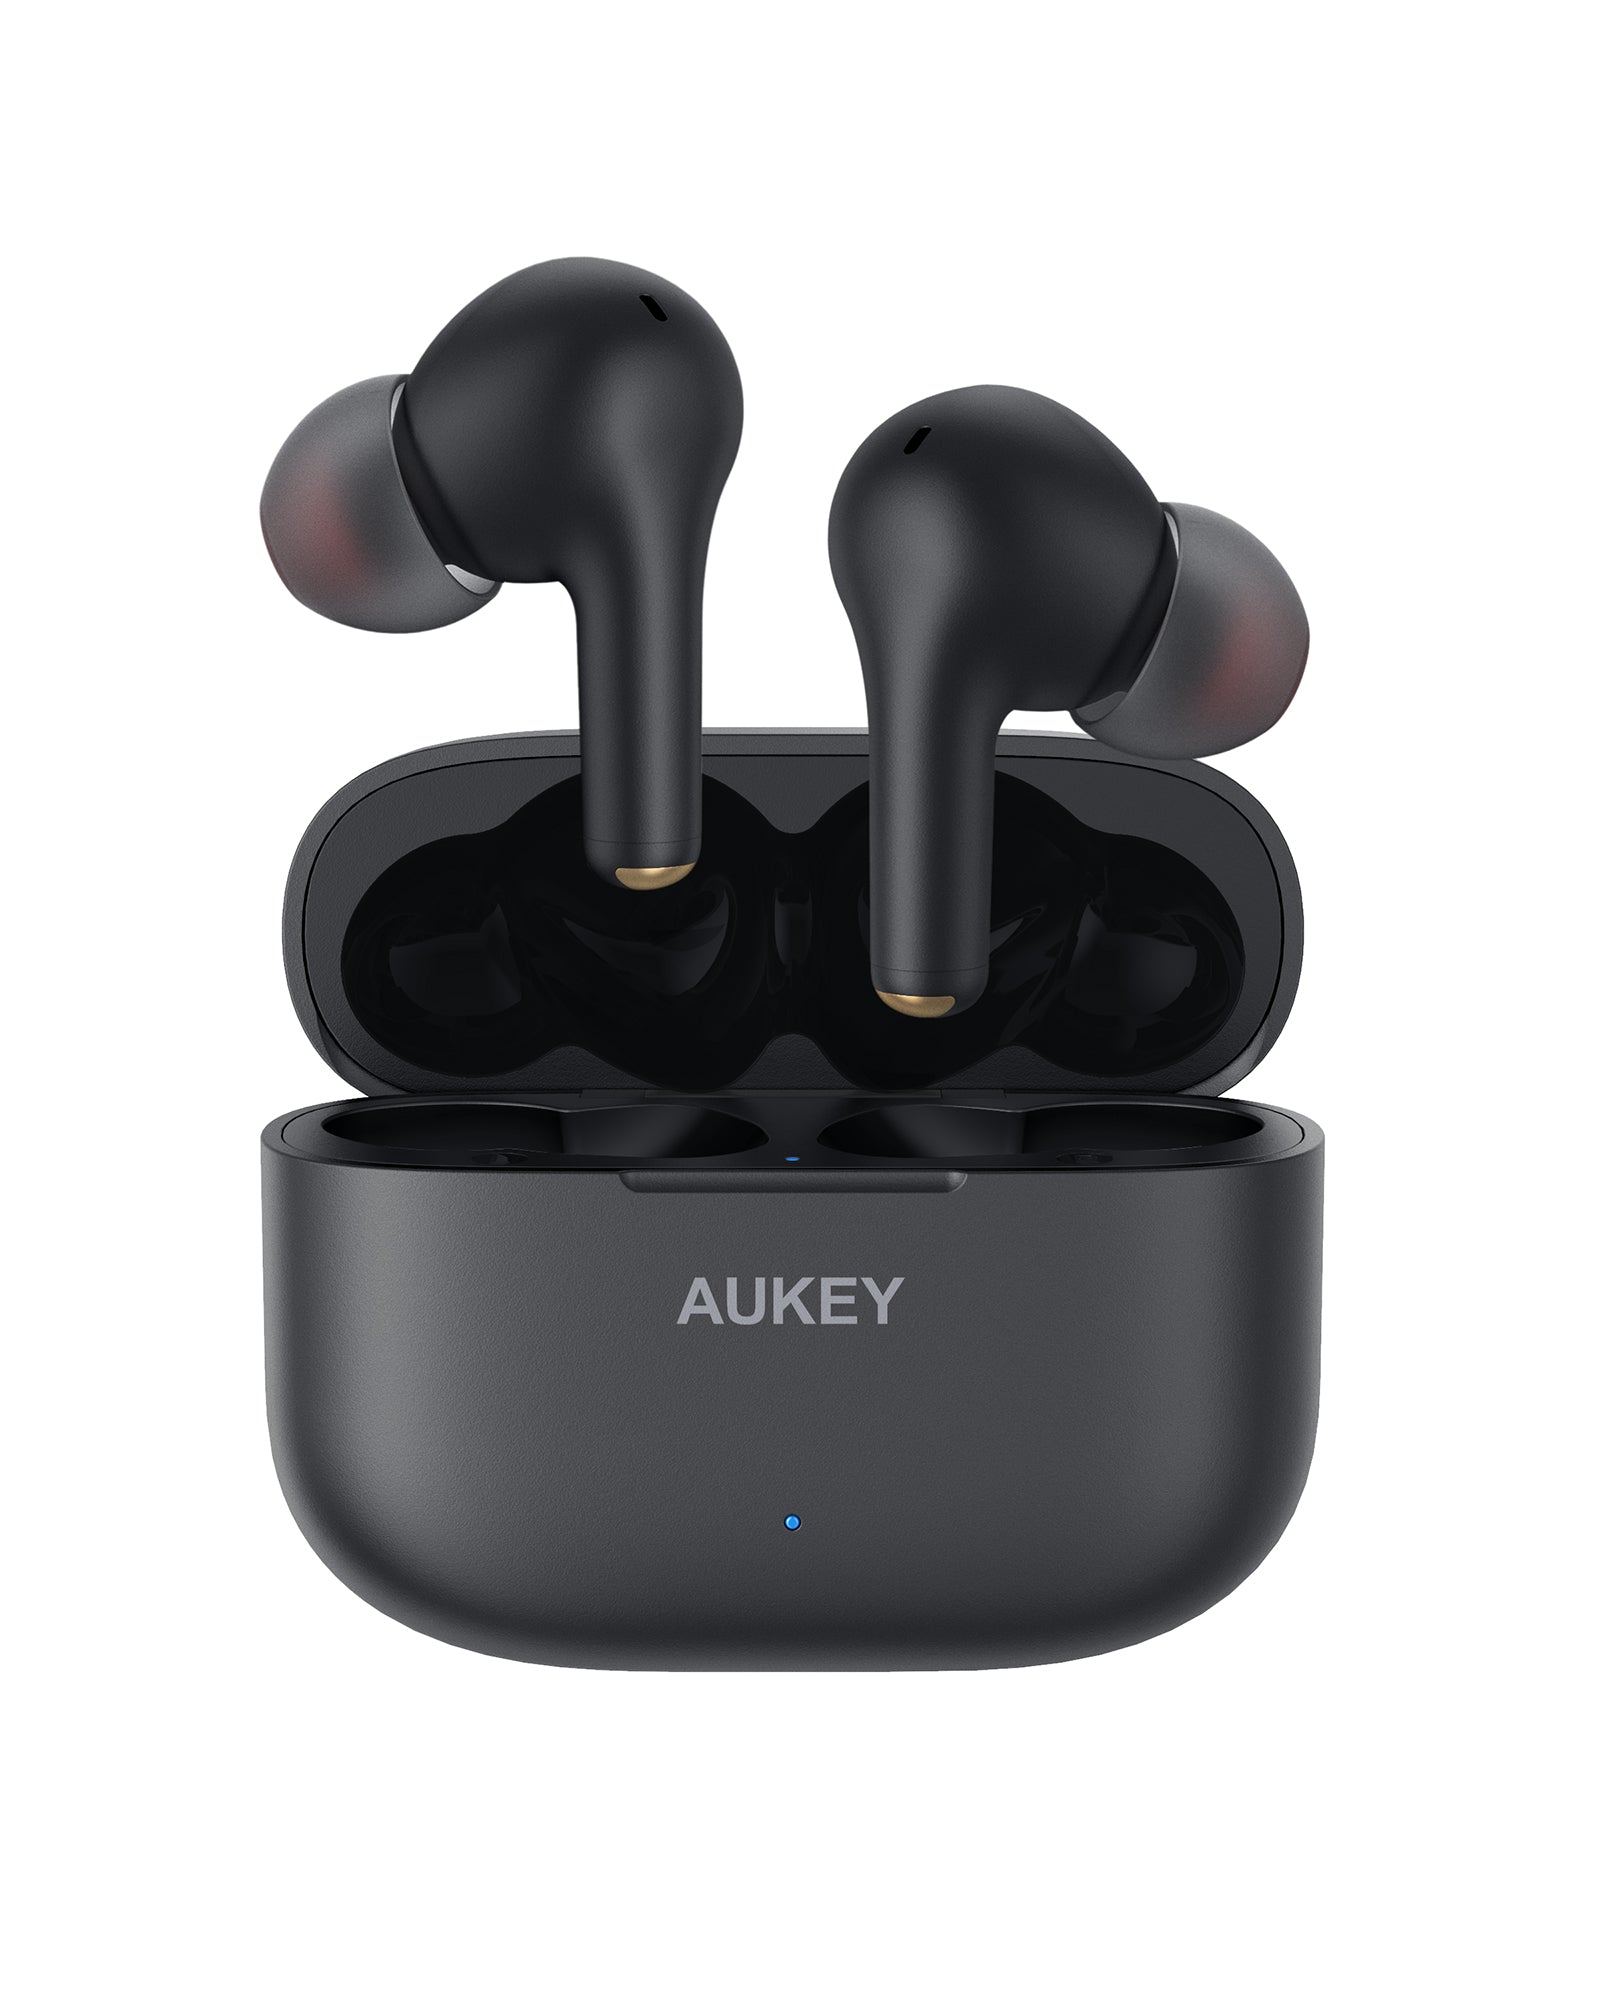 AUKEY EP-T27 True Wireless Earbuds with aptX